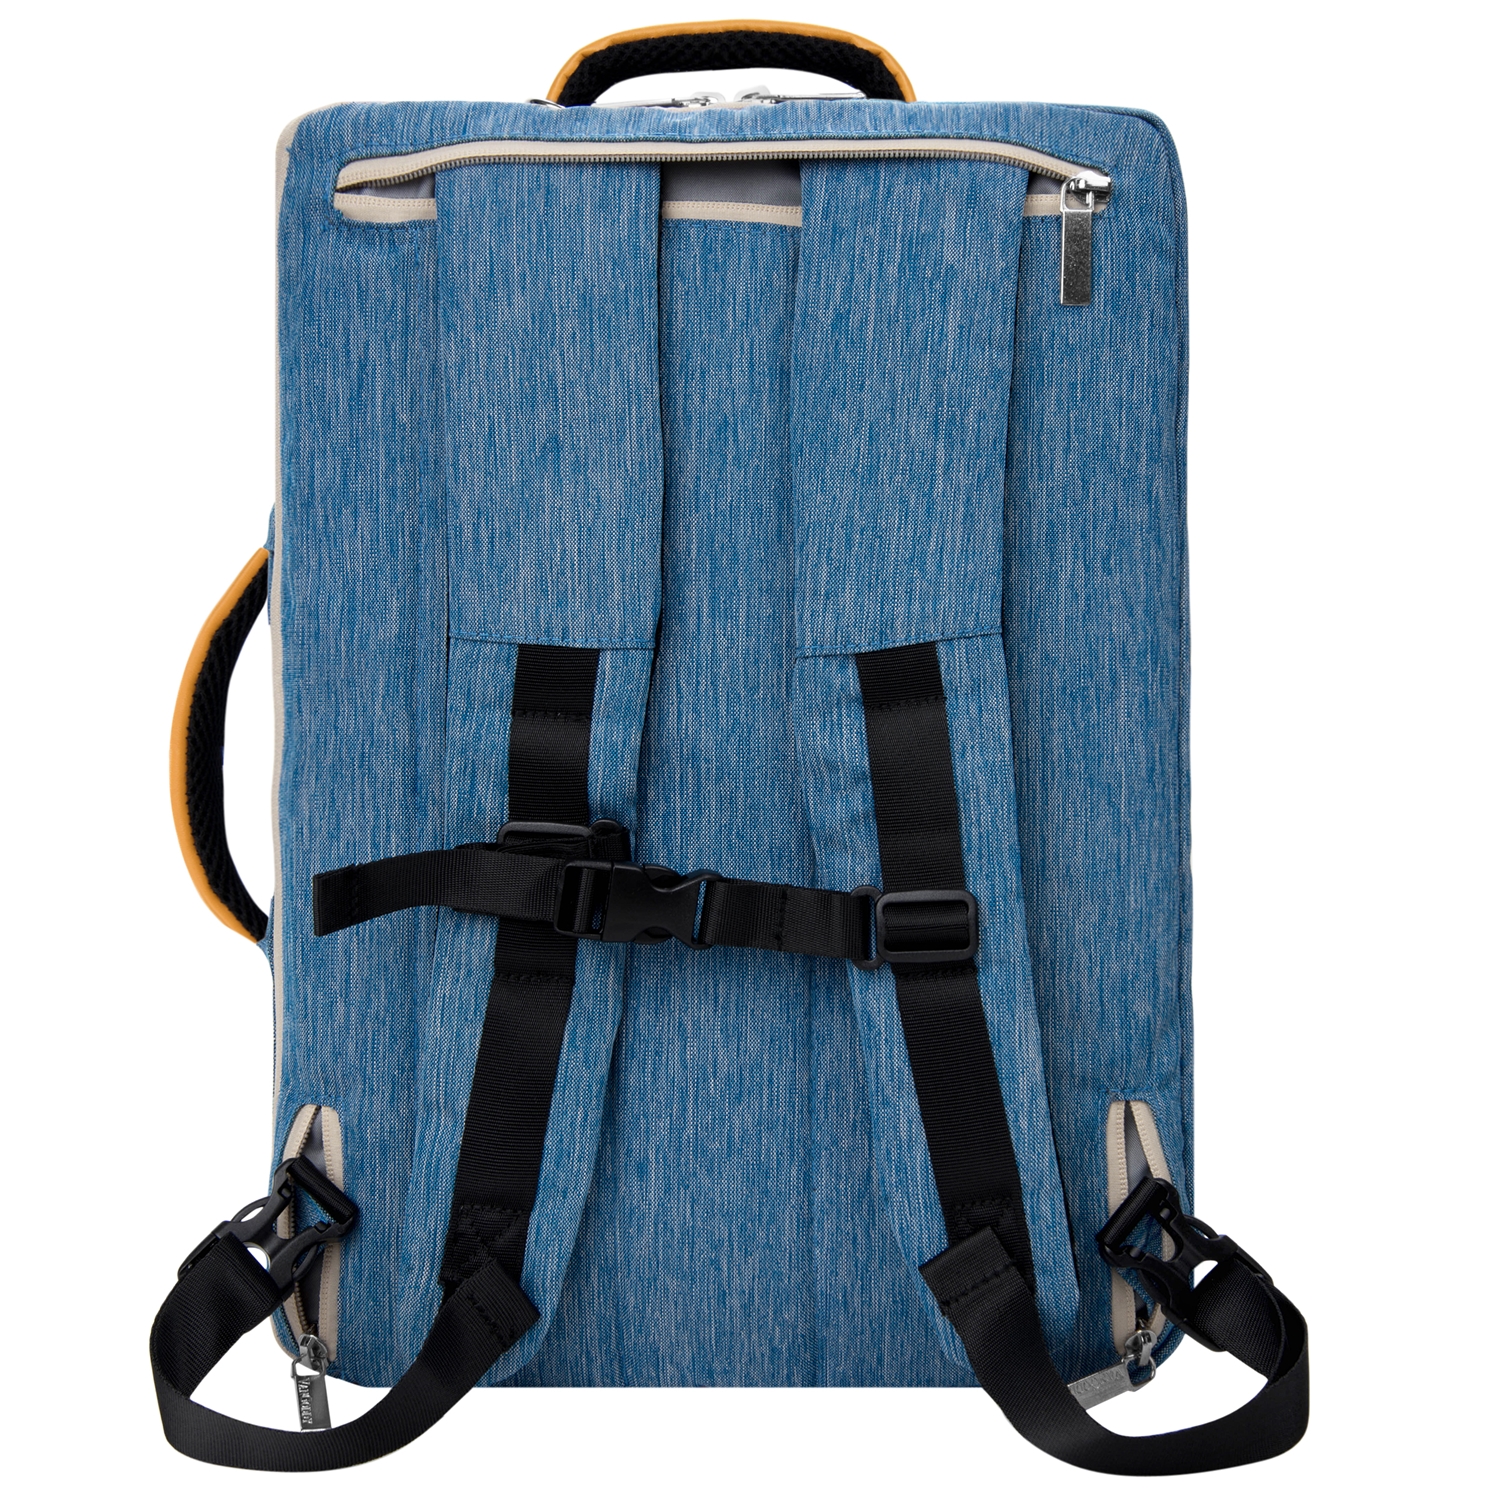 VANGODDY Slate Laptop Messenger / Carrying / Backpack Bag with Adjustable Strap fits 15.6 Acer Laptops